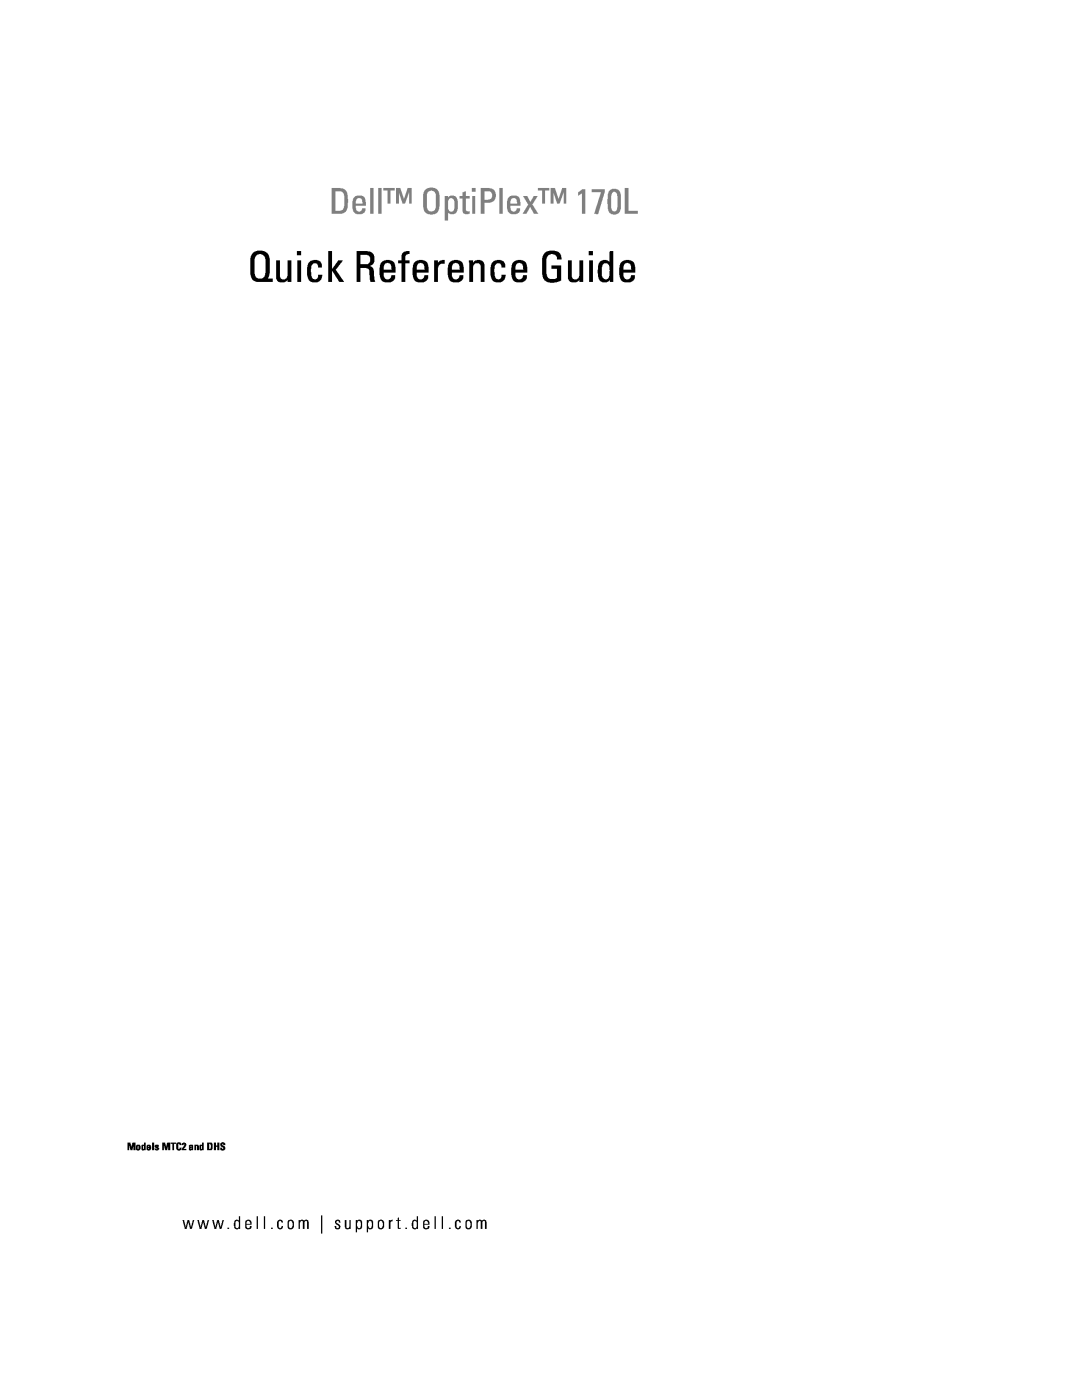 Dell Y6452 manual Dell OptiPlex 170L, w w w . d e l l . c o m s u p p o r t . d e l l . c o m, Quick Reference Guide 